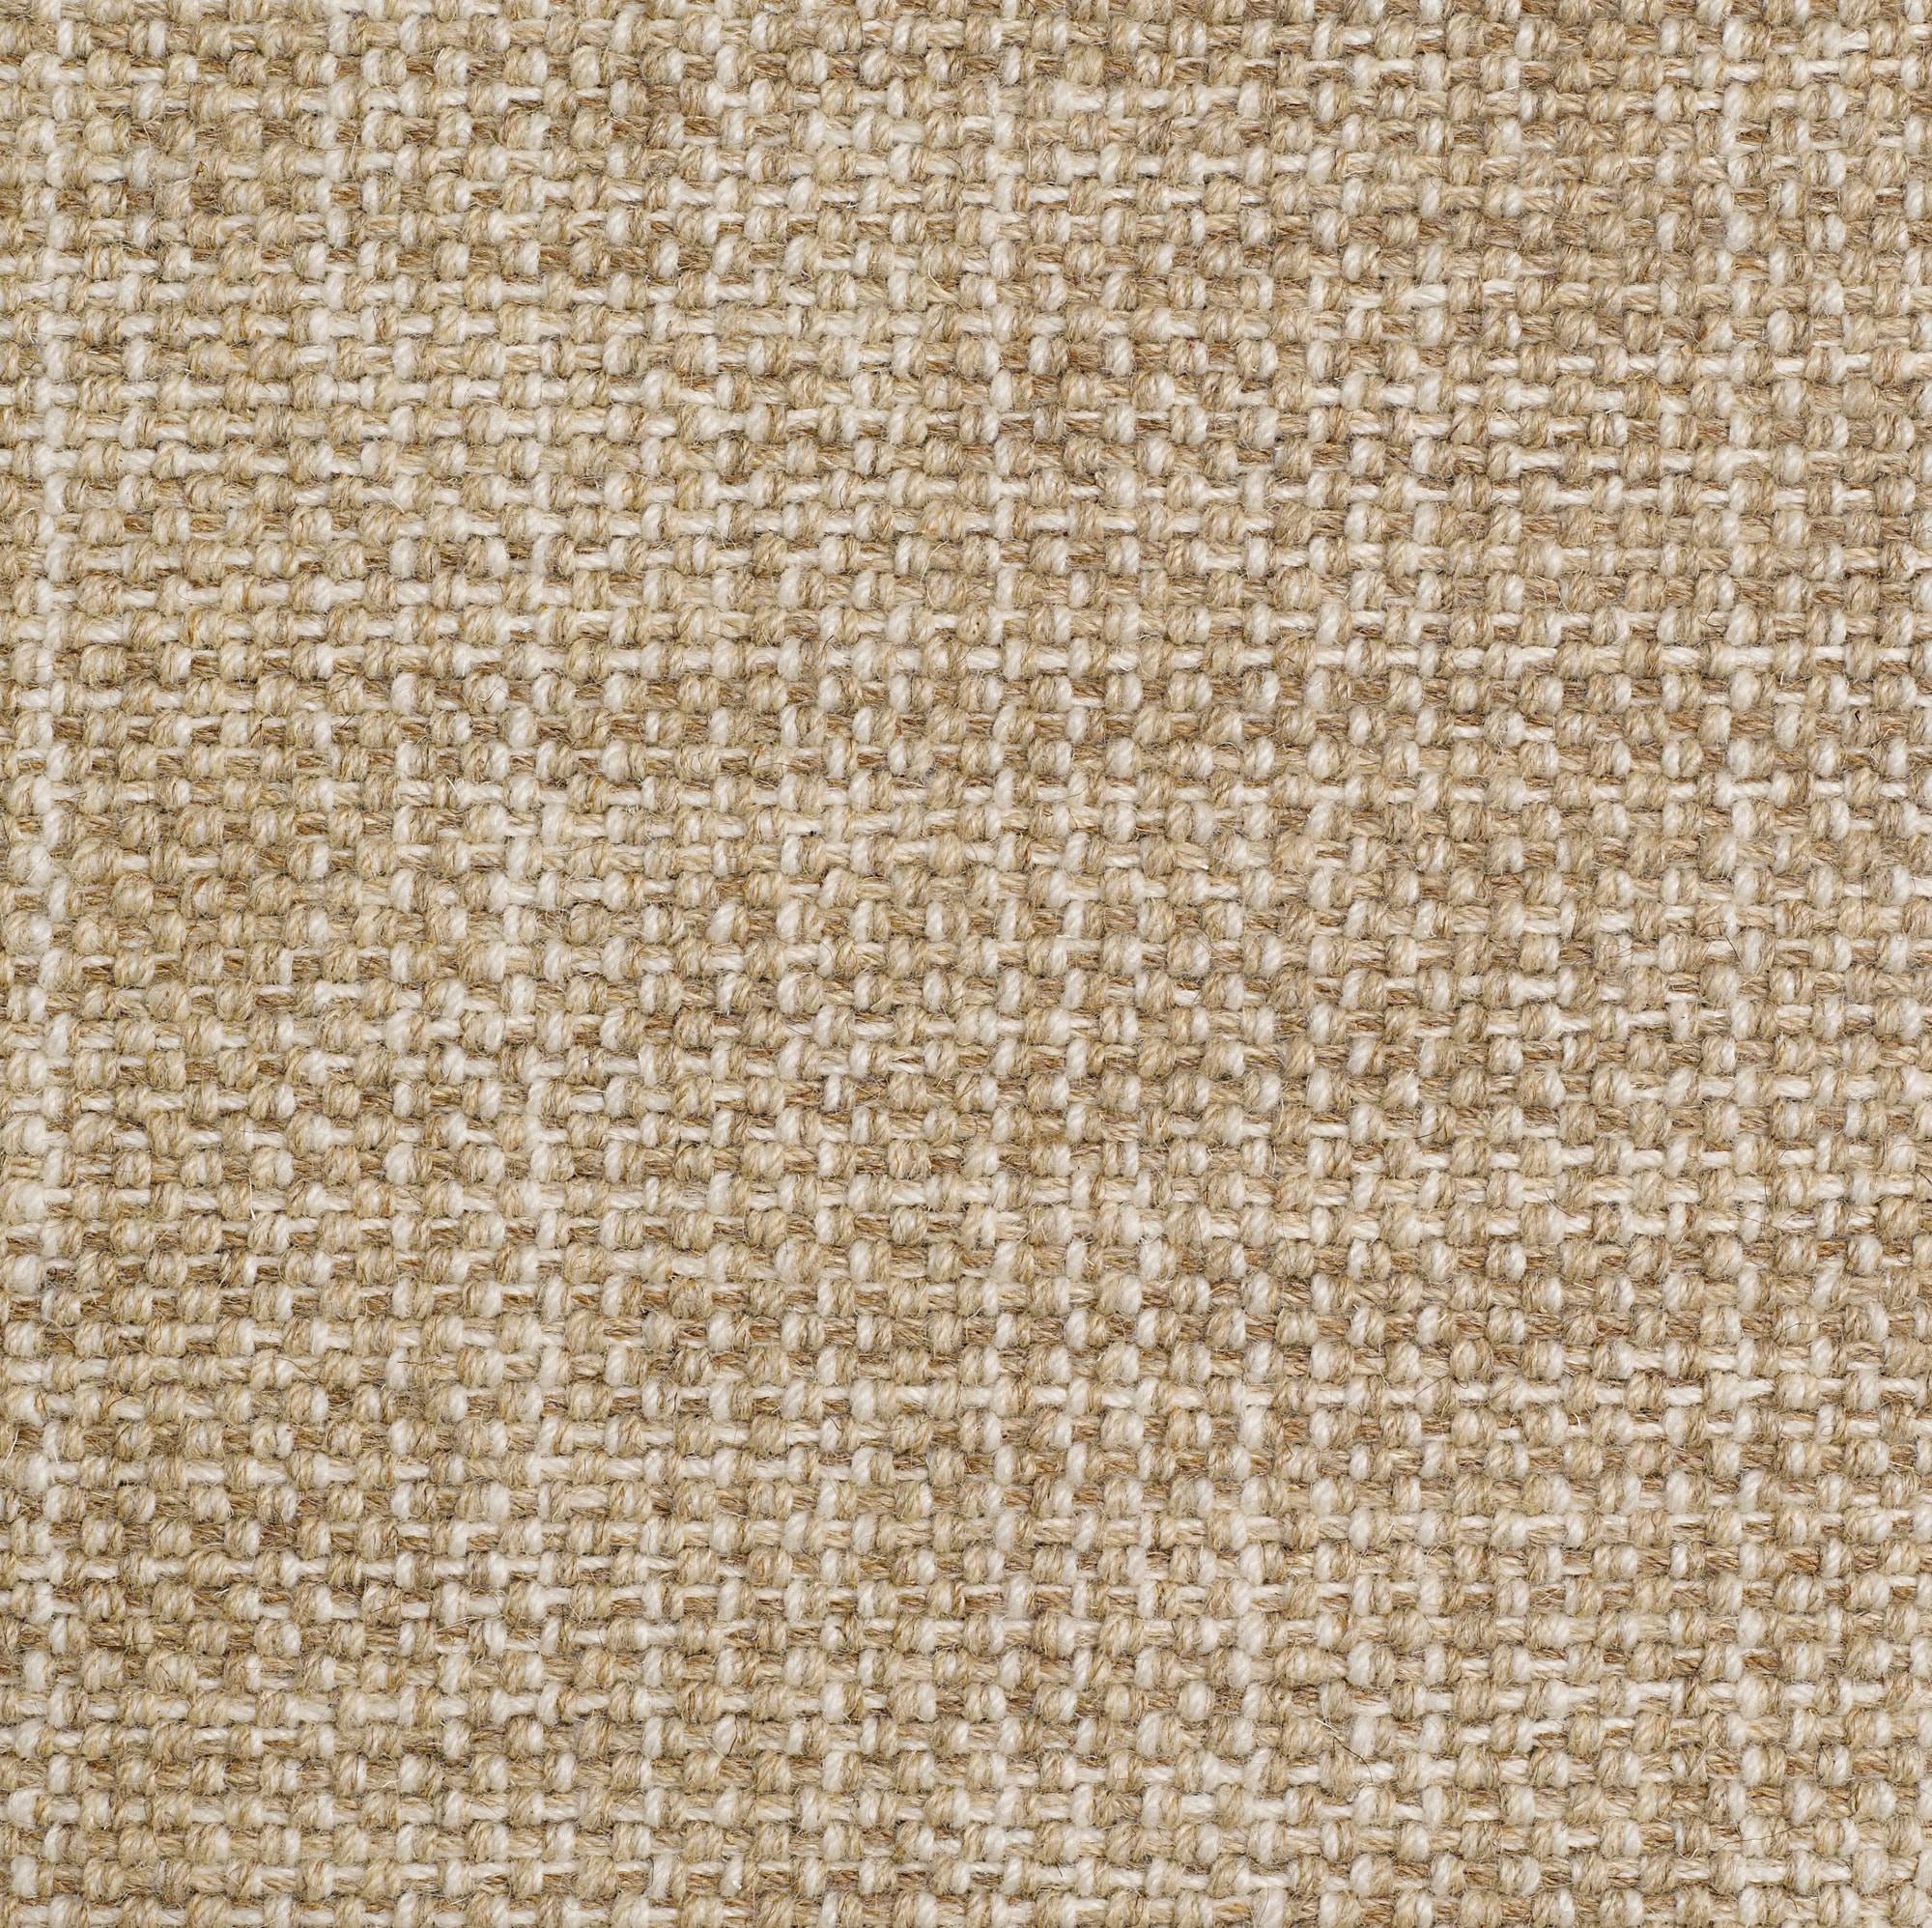 Milano: Tartufo - 100% Wool Carpet